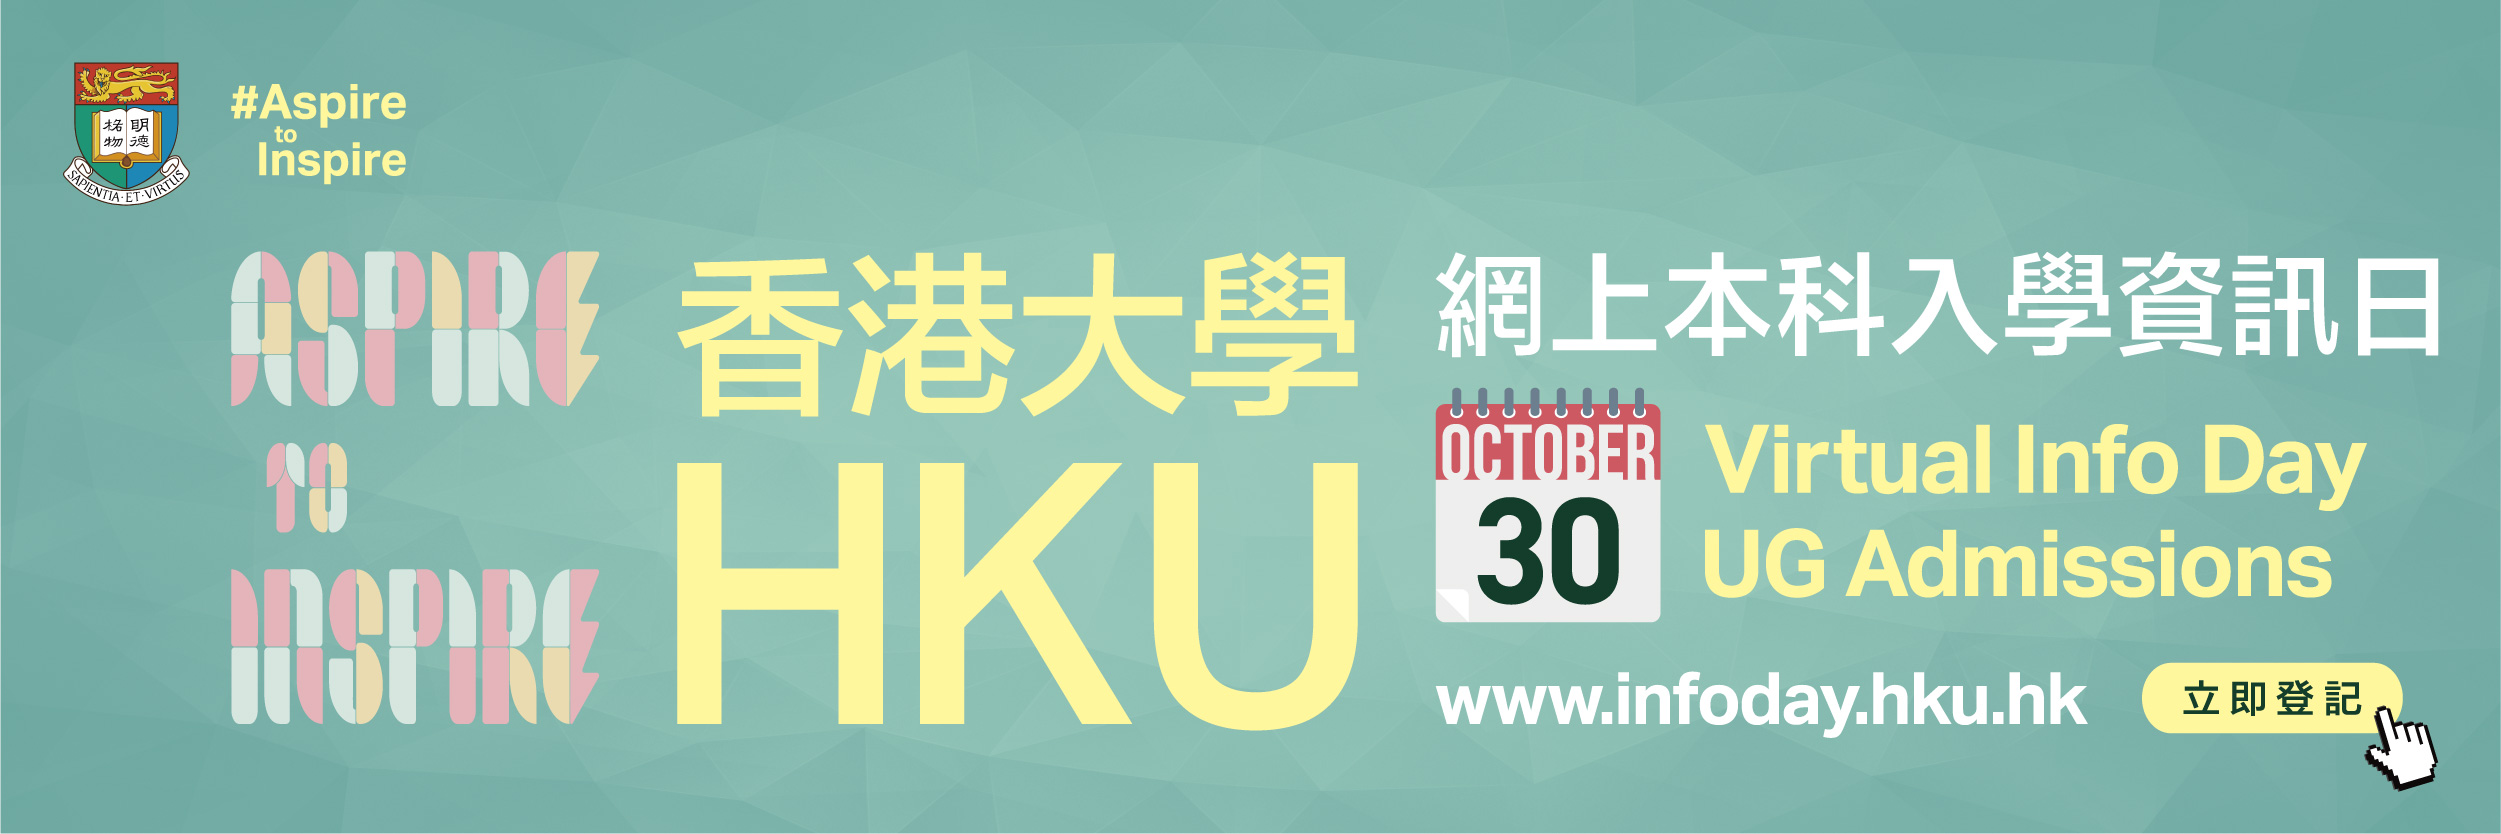 动画横幅 "HKU Virtual Info Day UG Admissions"